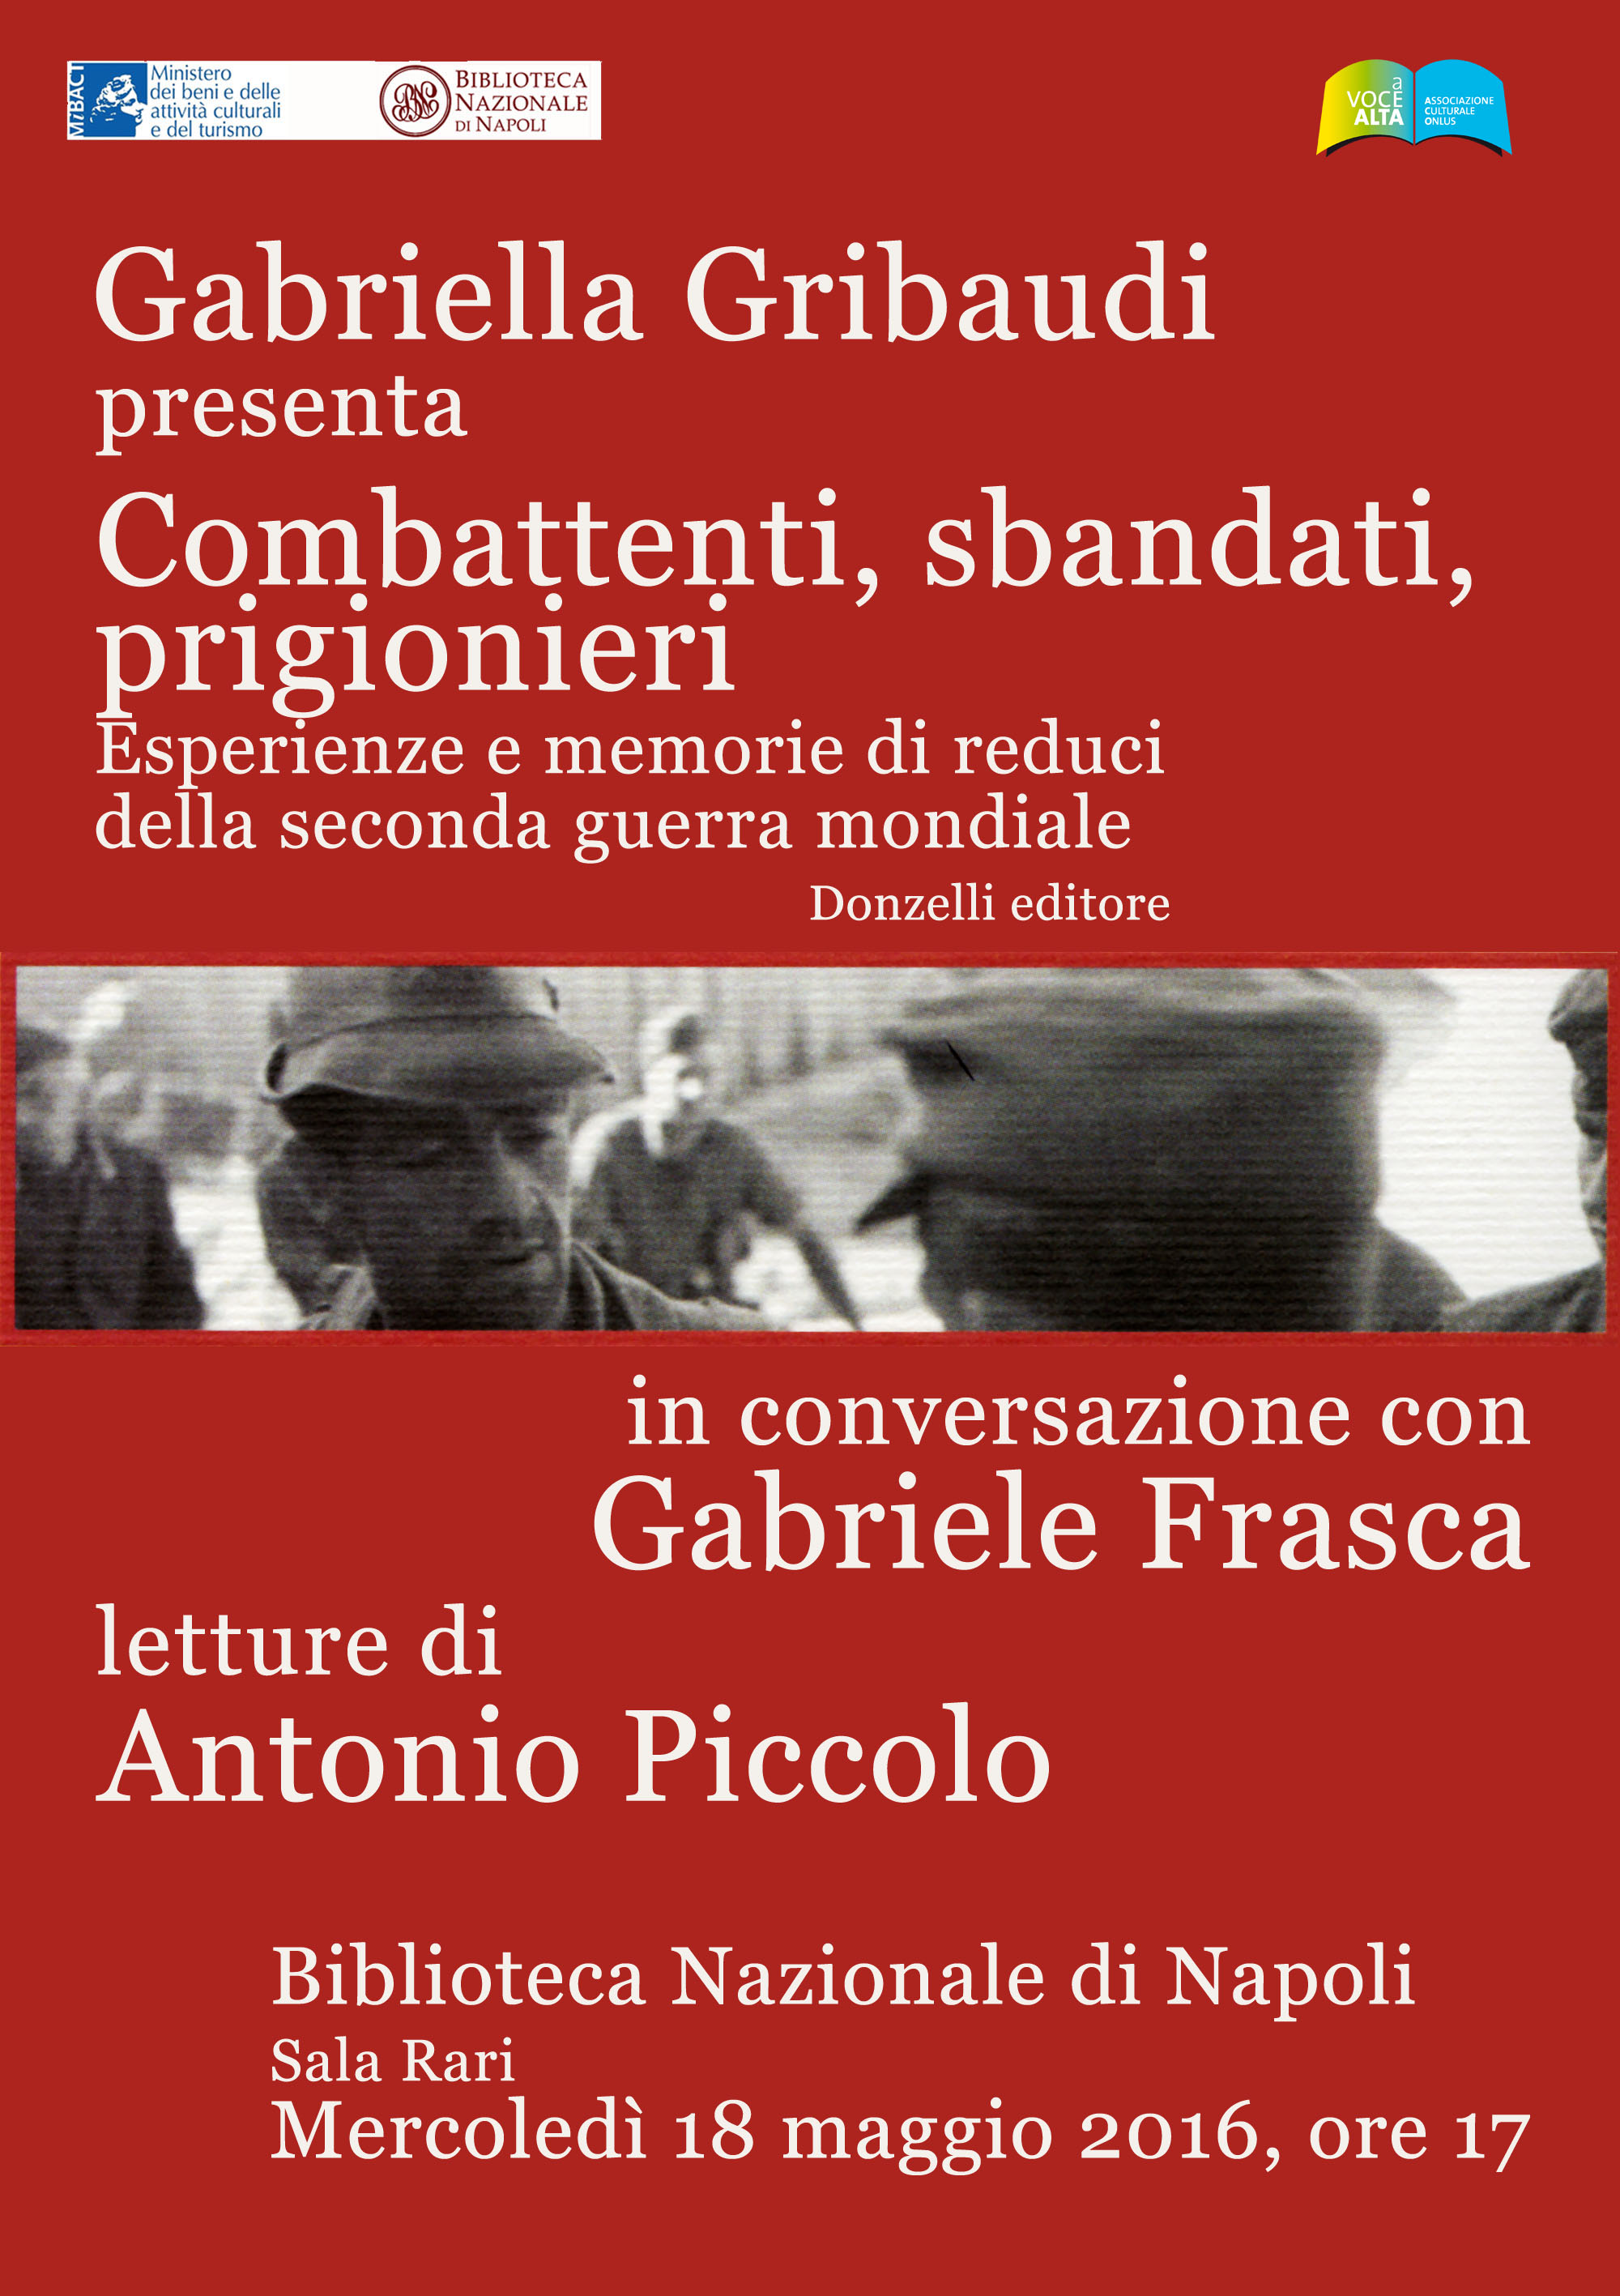  Napoli, Gabriele Frasca dialoga con Gabriella Gribaudi autrice di “Combattenti, sbandati, prigionieri”